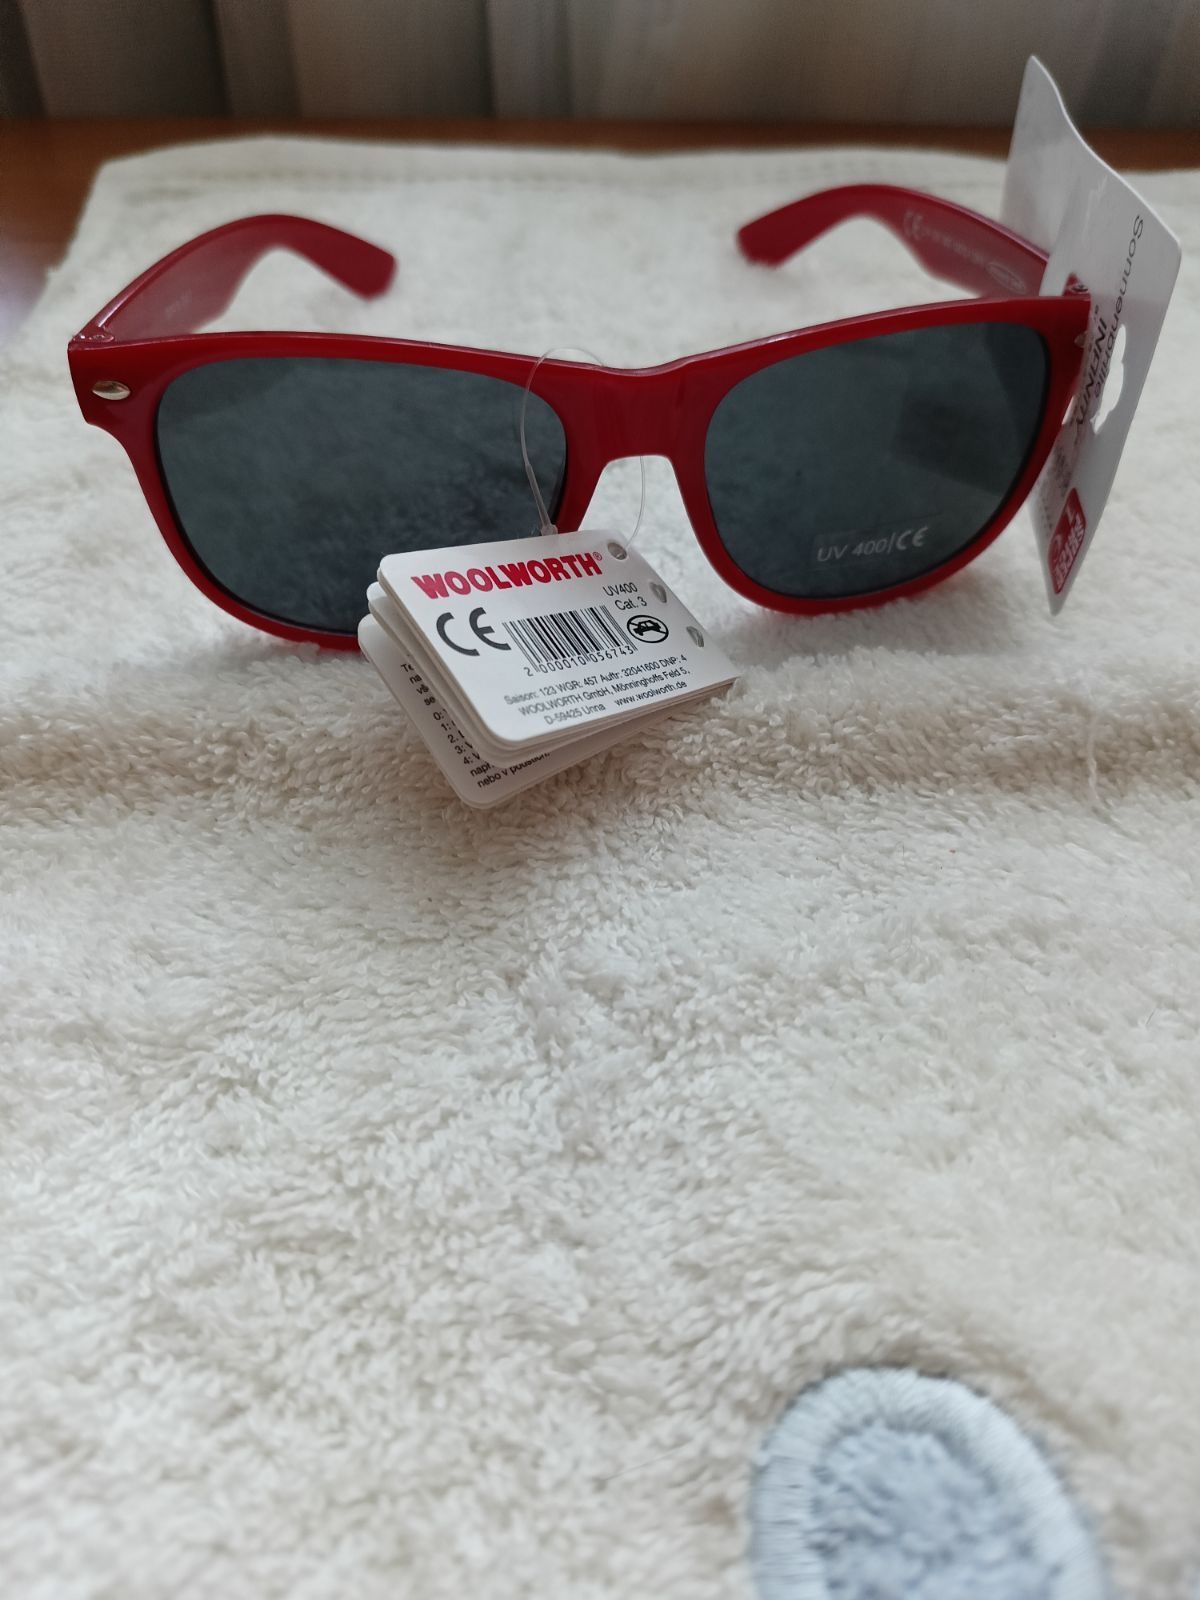 Okulary przeciwsłoneczne  UV 400 nowe firmy Woolhworth